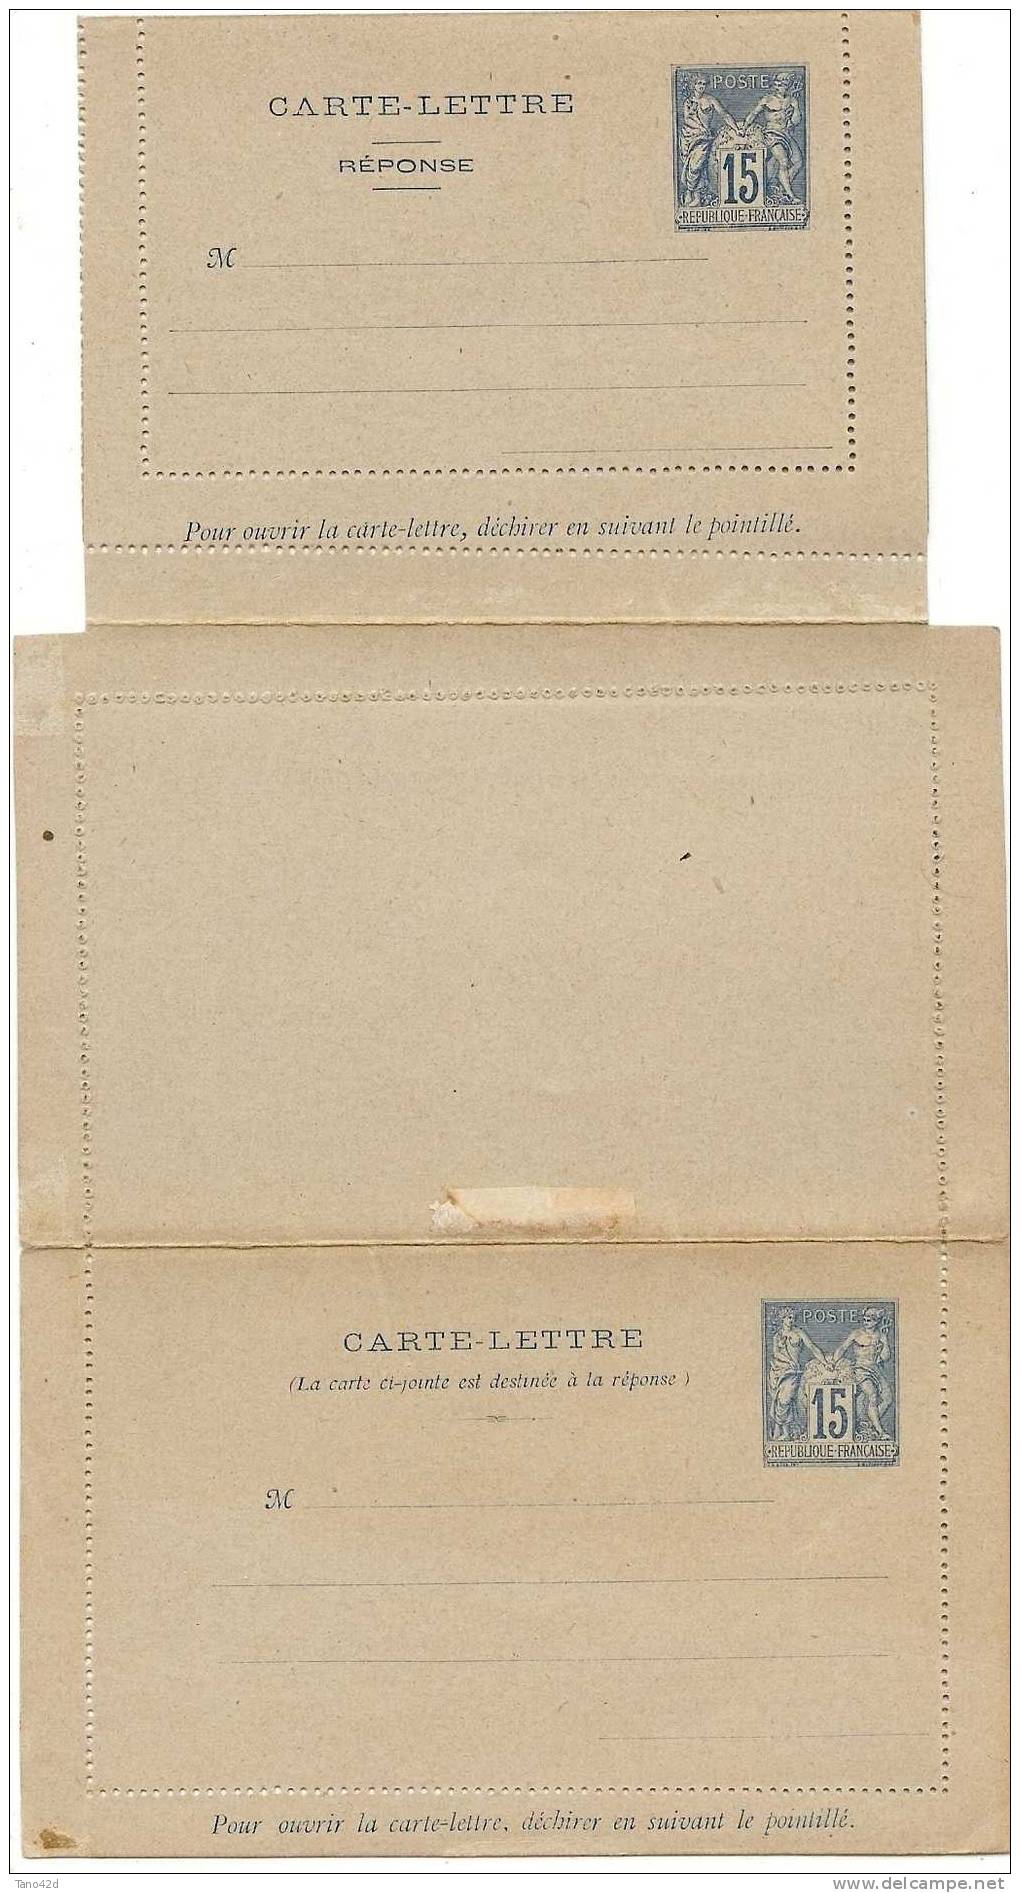 REF LGM - FRANCE CARTE LETTRE AVEC REPONSE PAYEE TYPE SAGE 15c - Cartoline-lettere